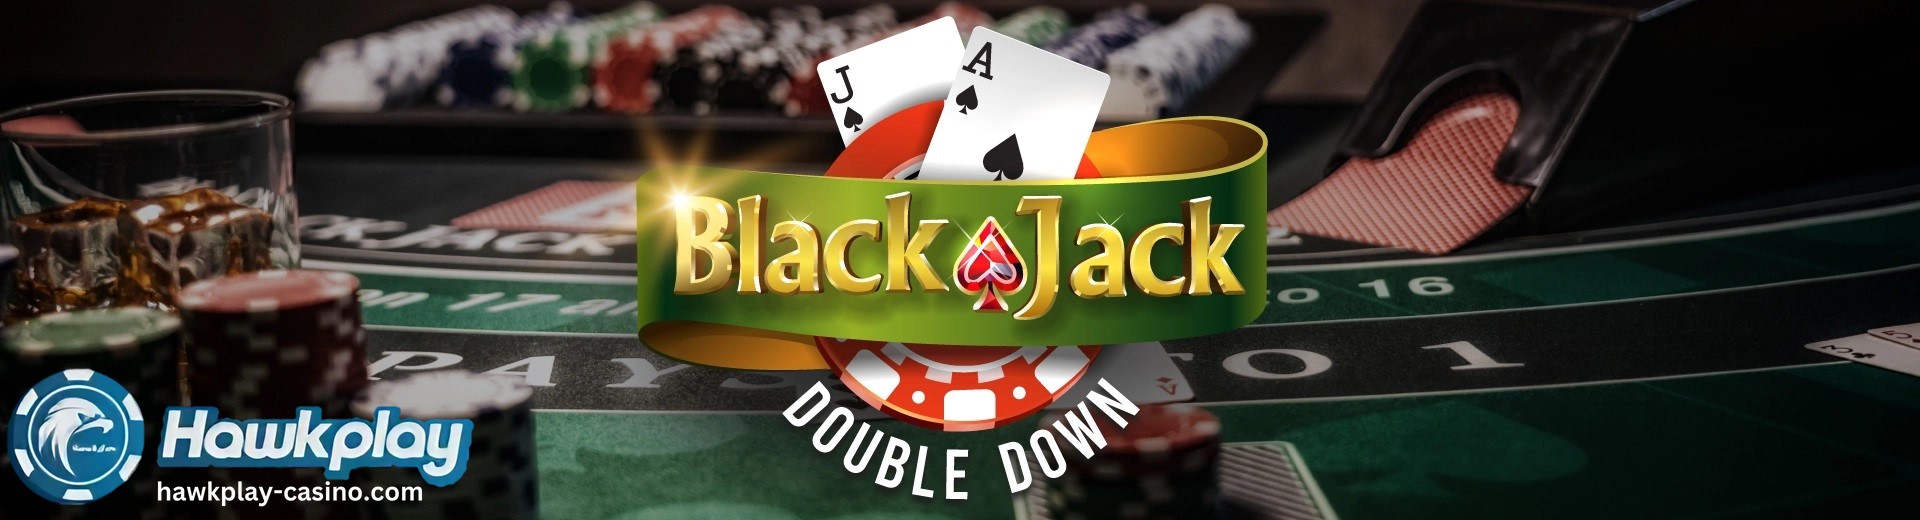 Mga Dapat at Hindi Dapat Gawin ng Blackjack para sa Double Down Hawkplay